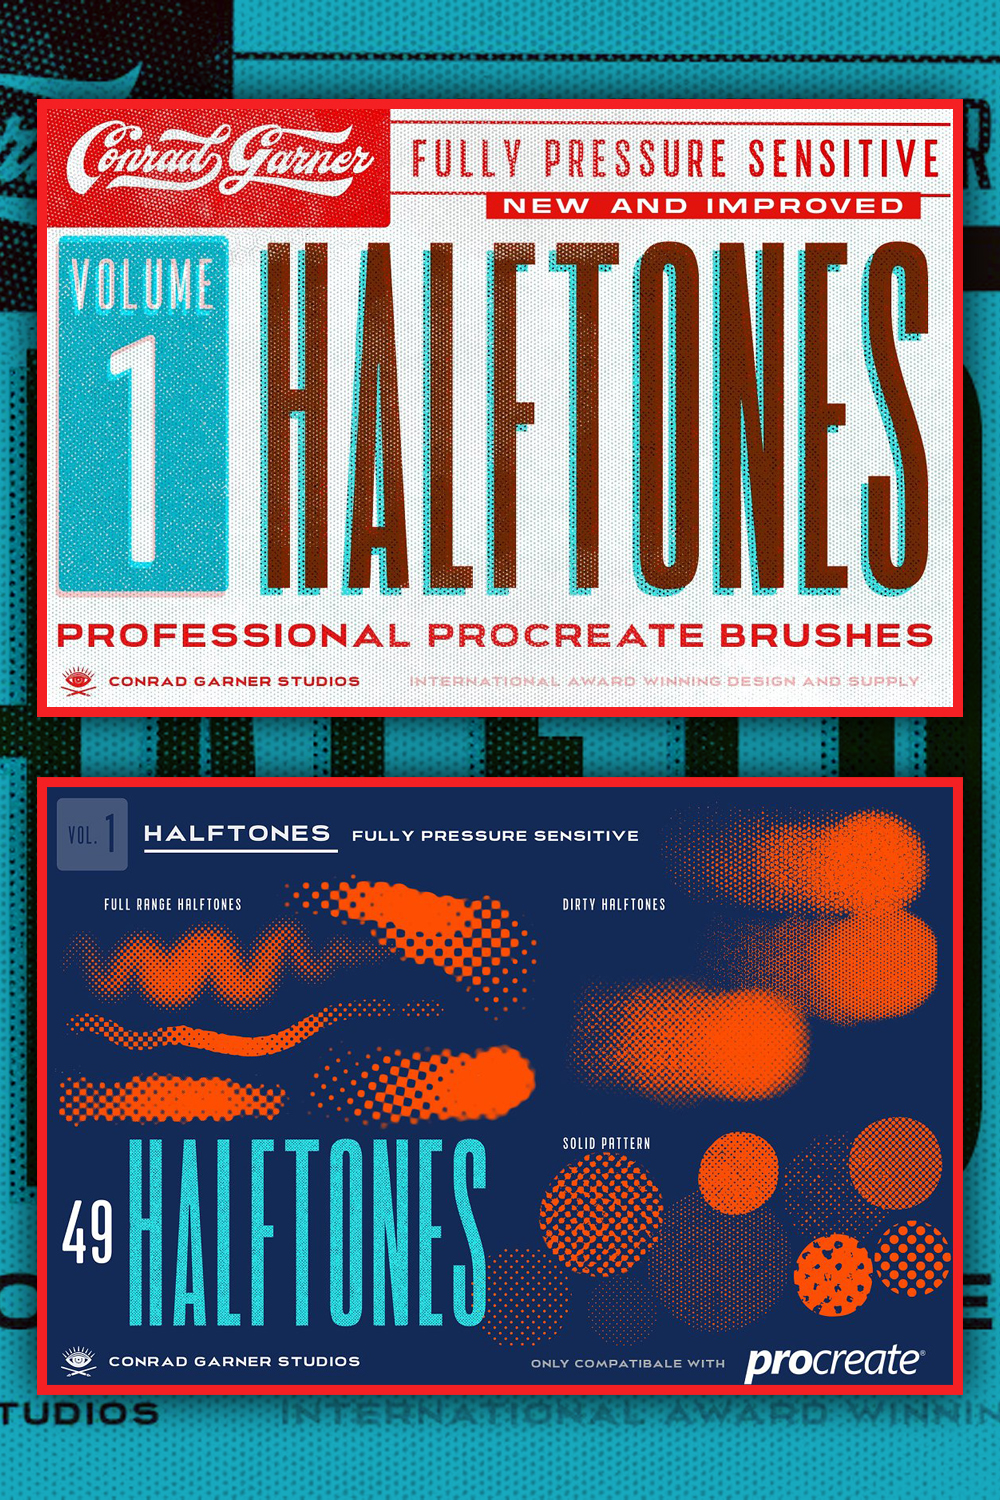 Halftone brushes procreate of pinterest.